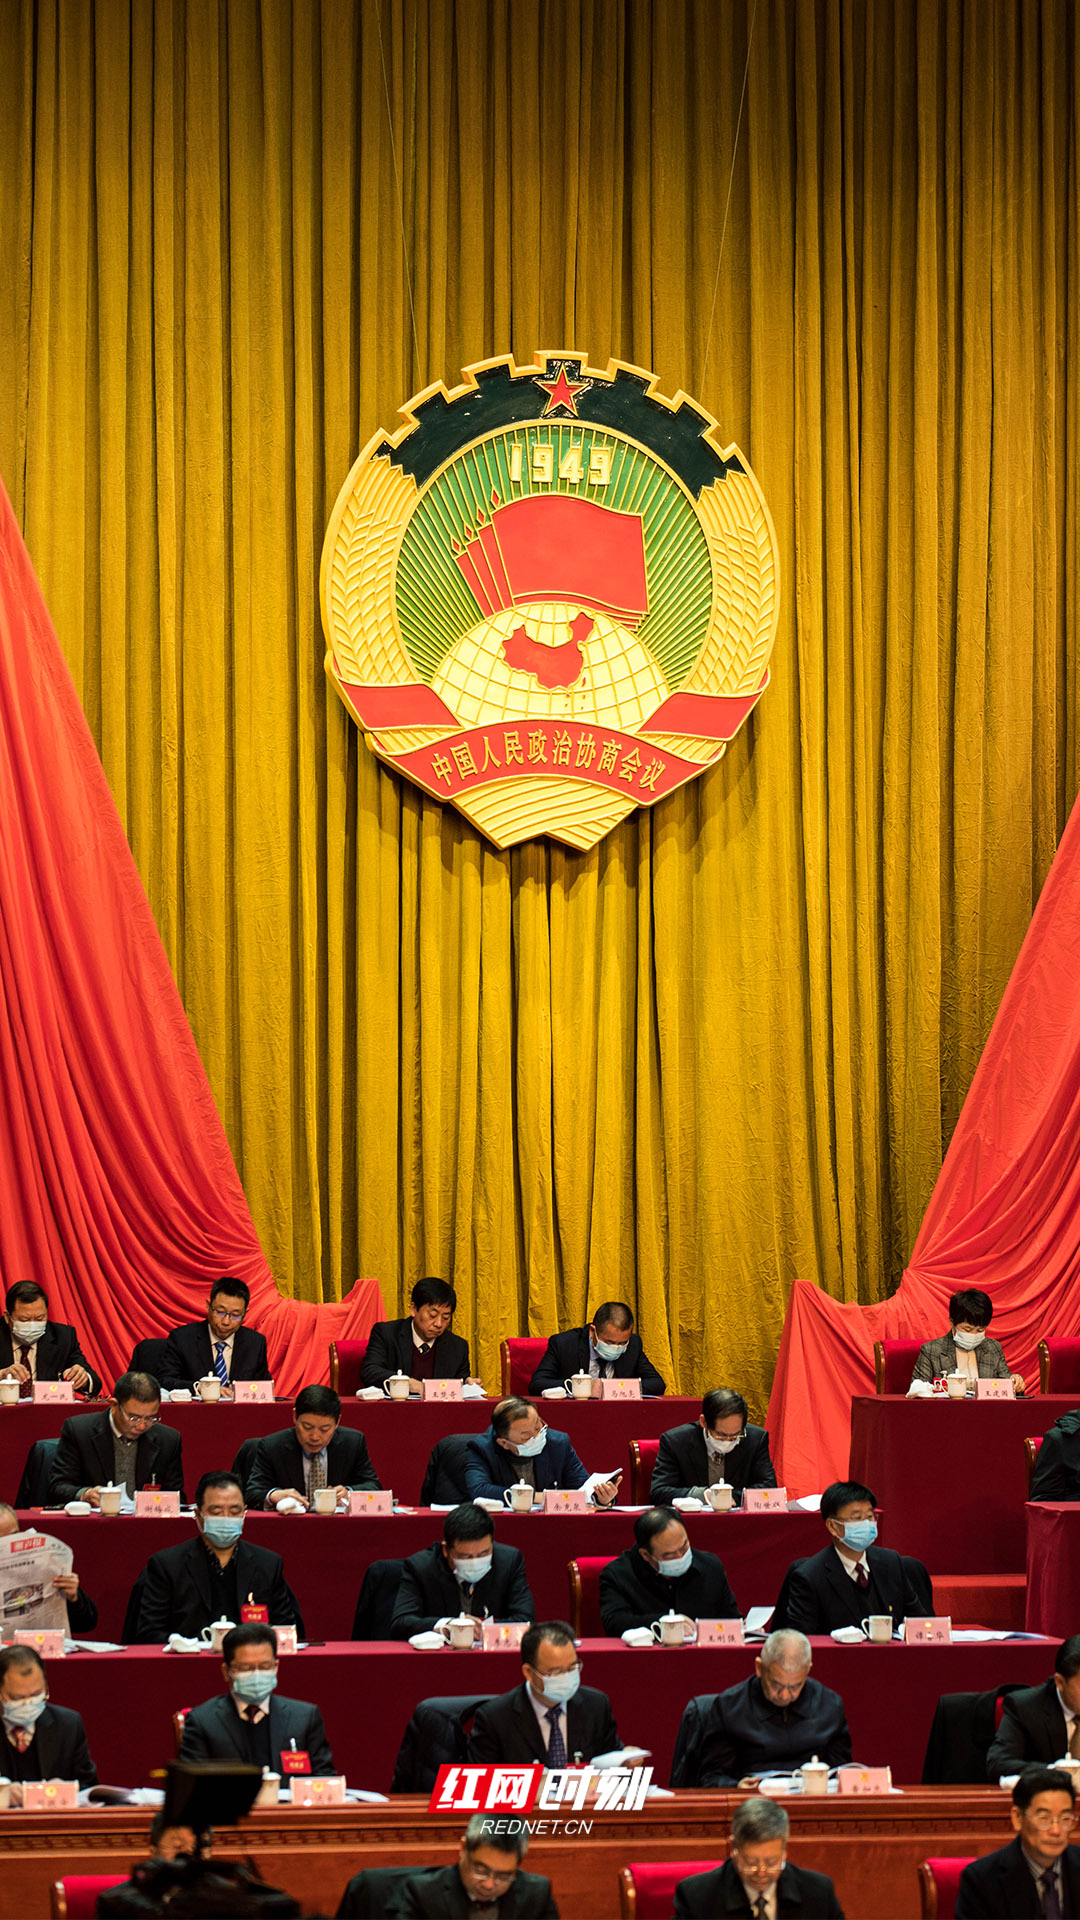 主席团正中央悬挂中国人民政治协商会议会徽。